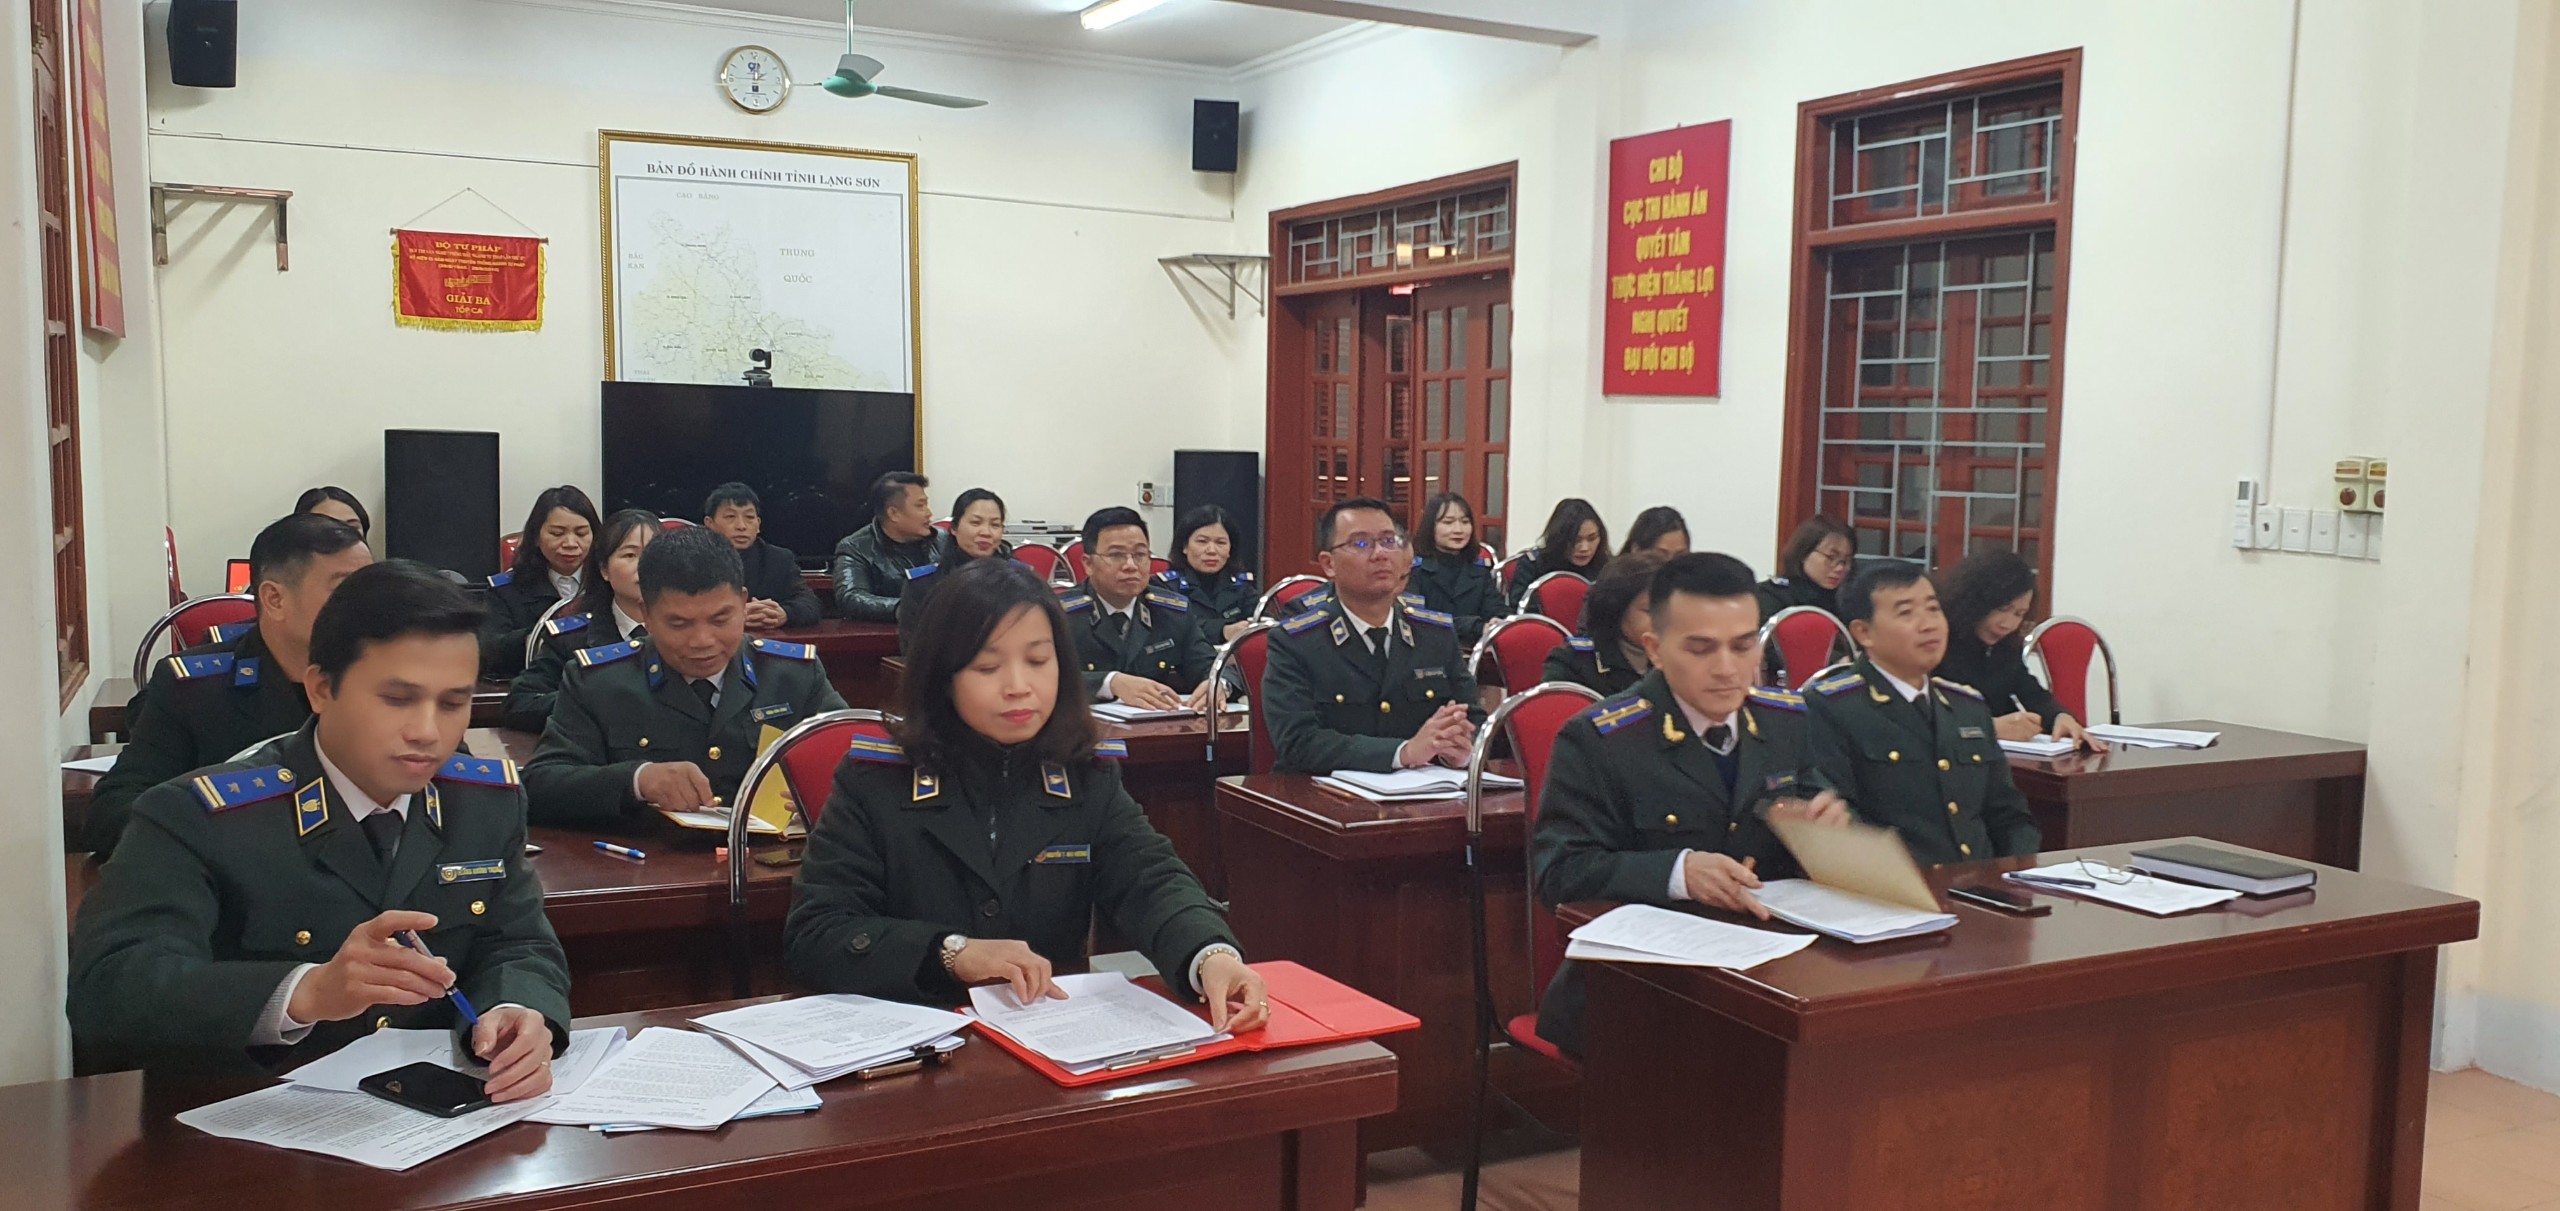 Cục thi hành án dân sự tỉnh Lạng Sơn tổ chức hội nghị công chức và người lao động năm 2022